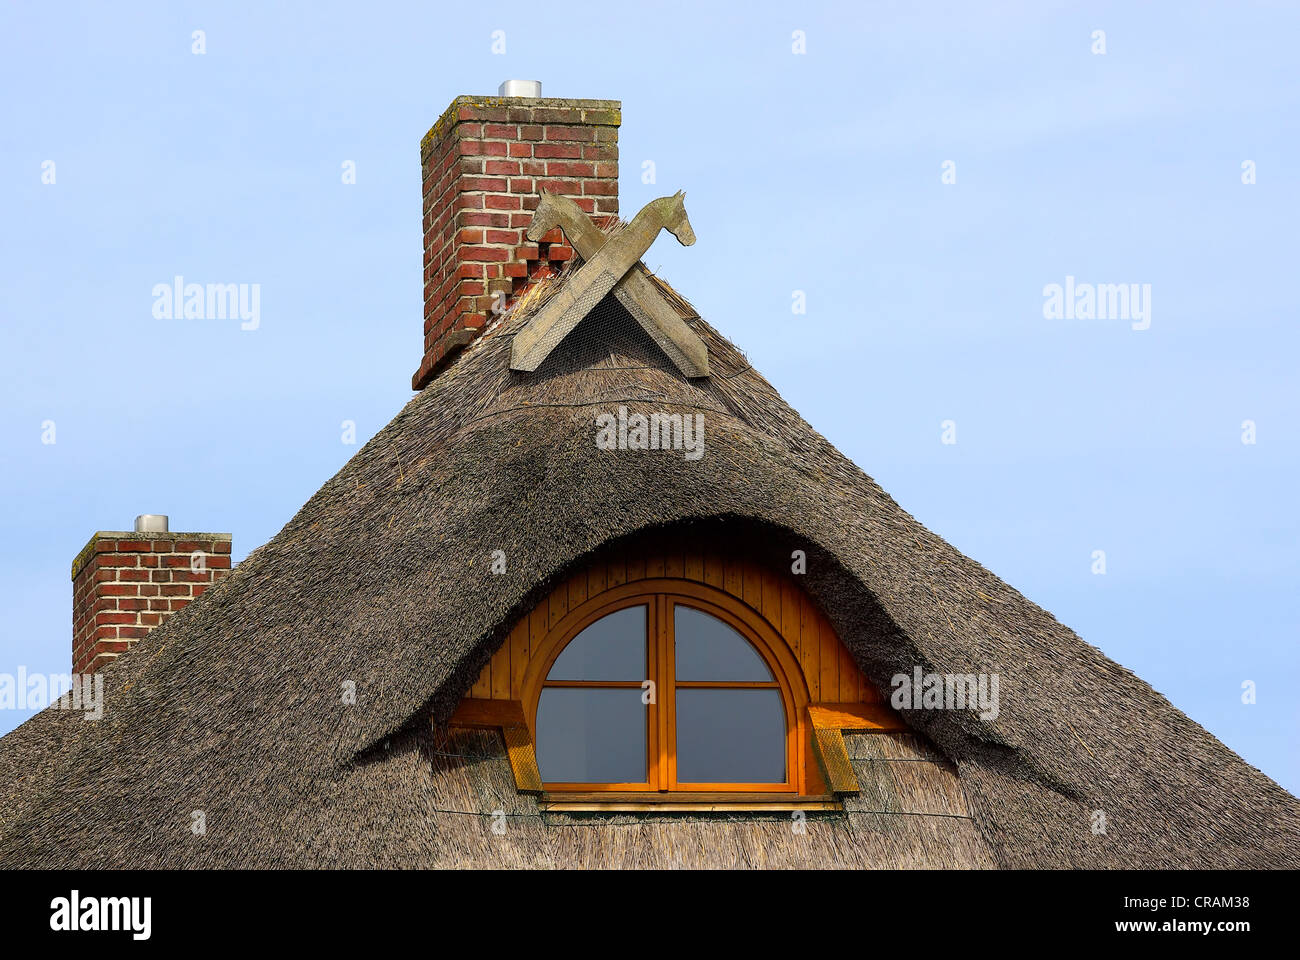 Schilf bewachsenen Dach eines Einfamilienhauses in Norddeutschland. Stockfoto